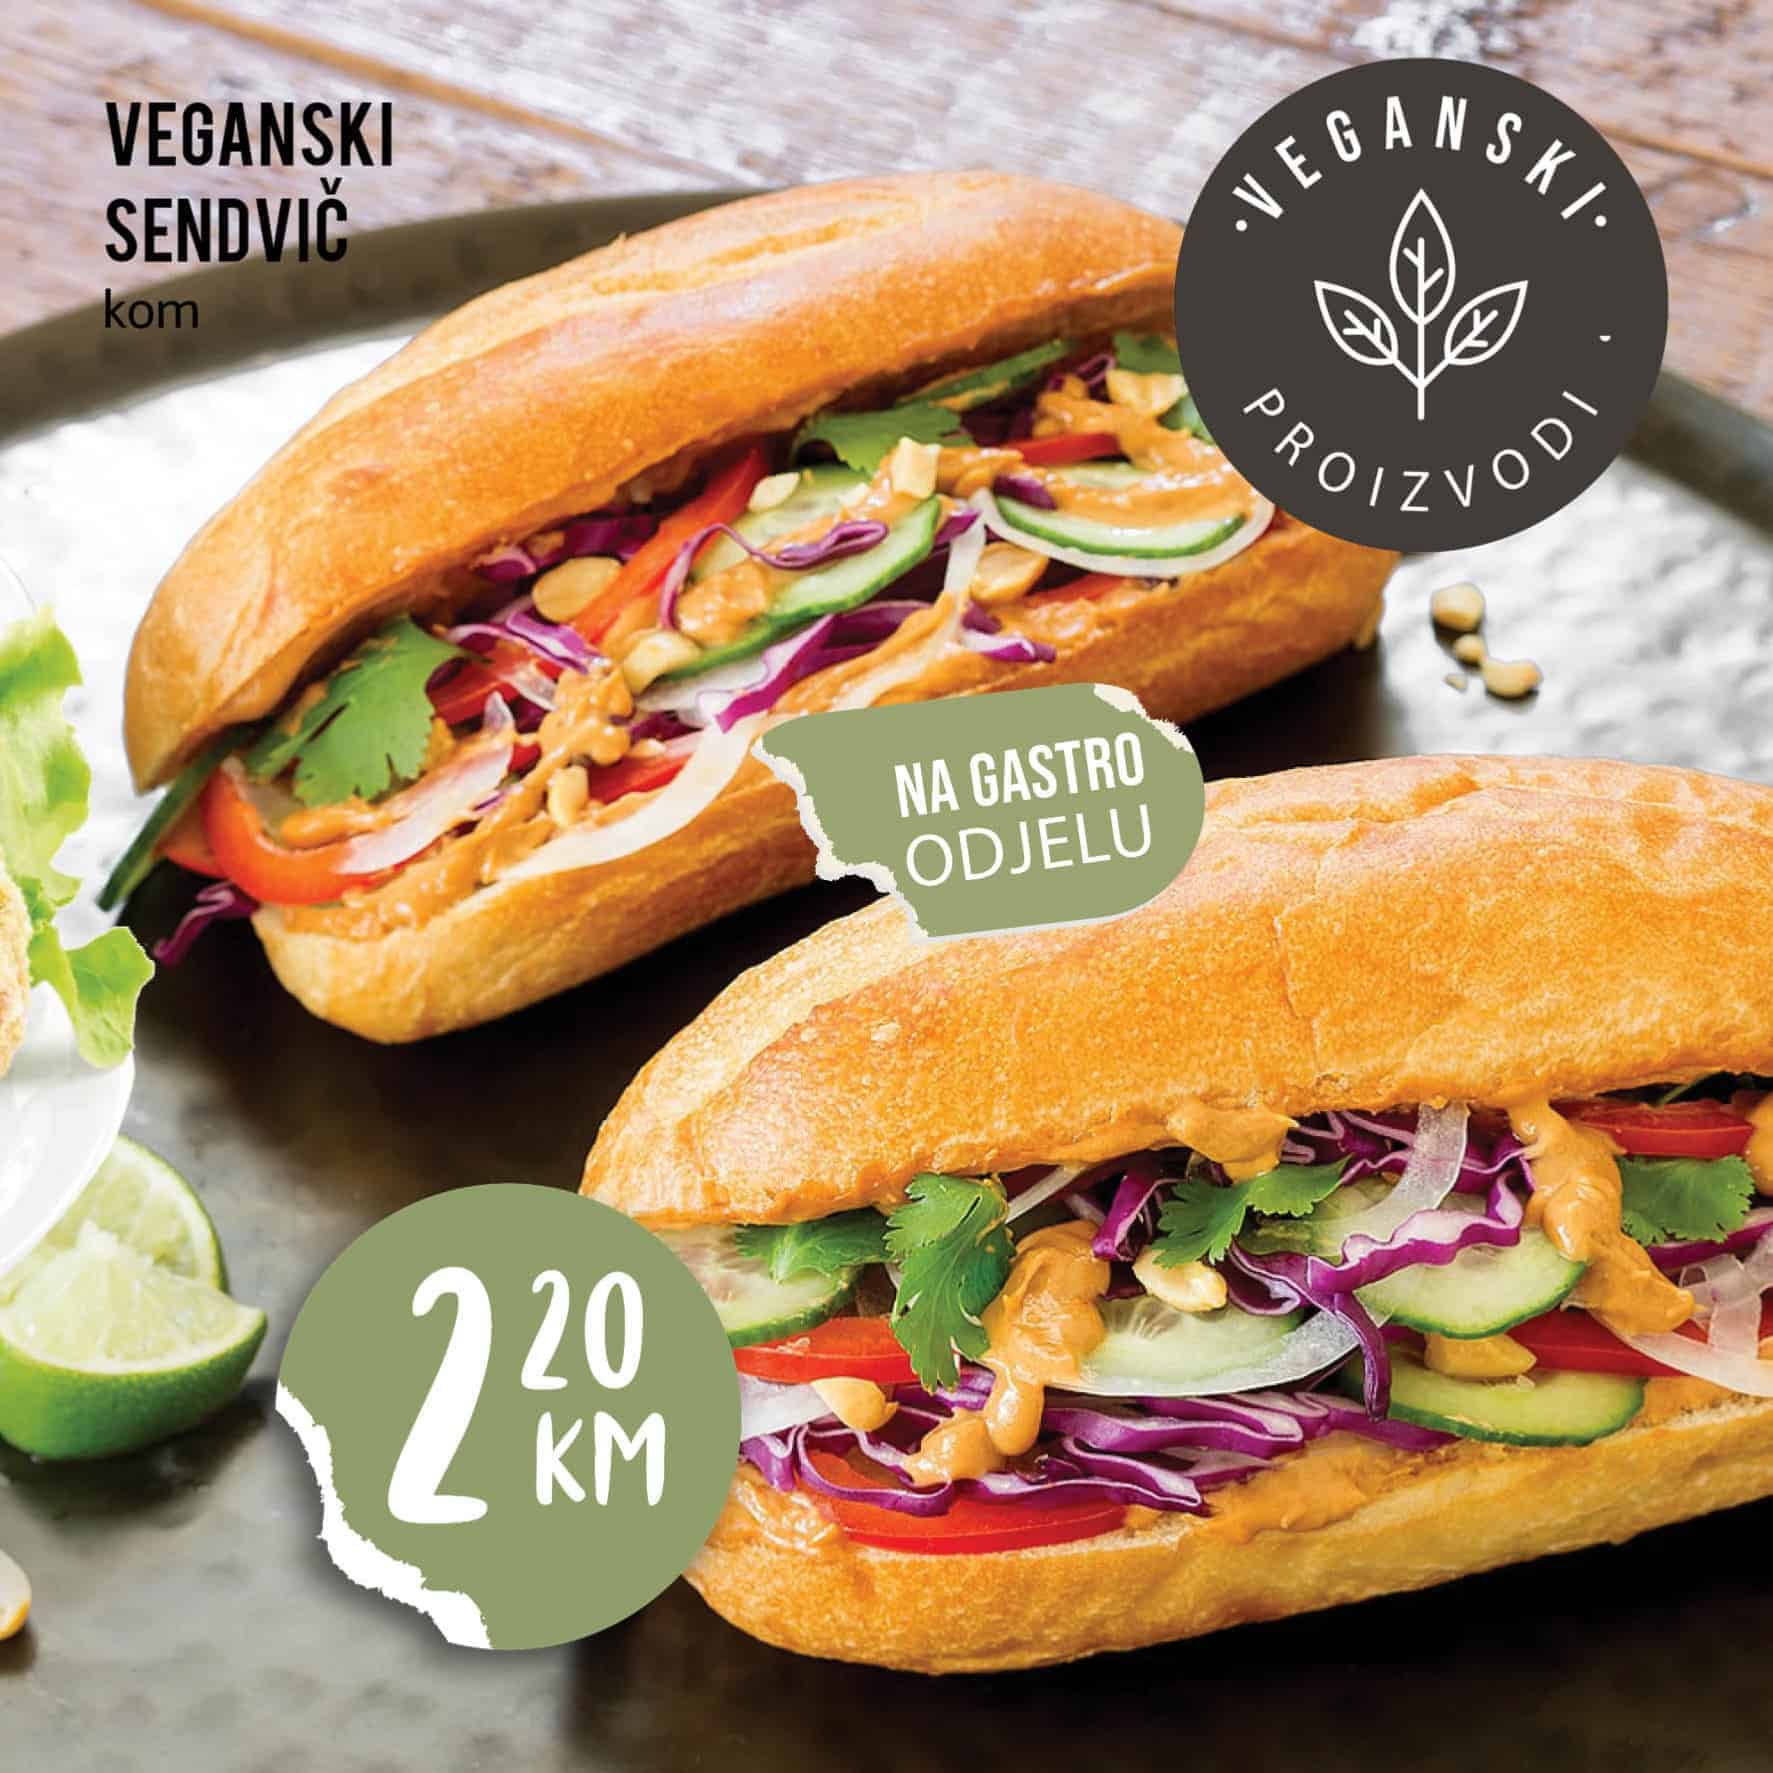 veganski sendvic, veganski sendvic cijena, veganski sendvic akcija, gdje kupiti veganski sendvic, kako napraviti veganski sendvic